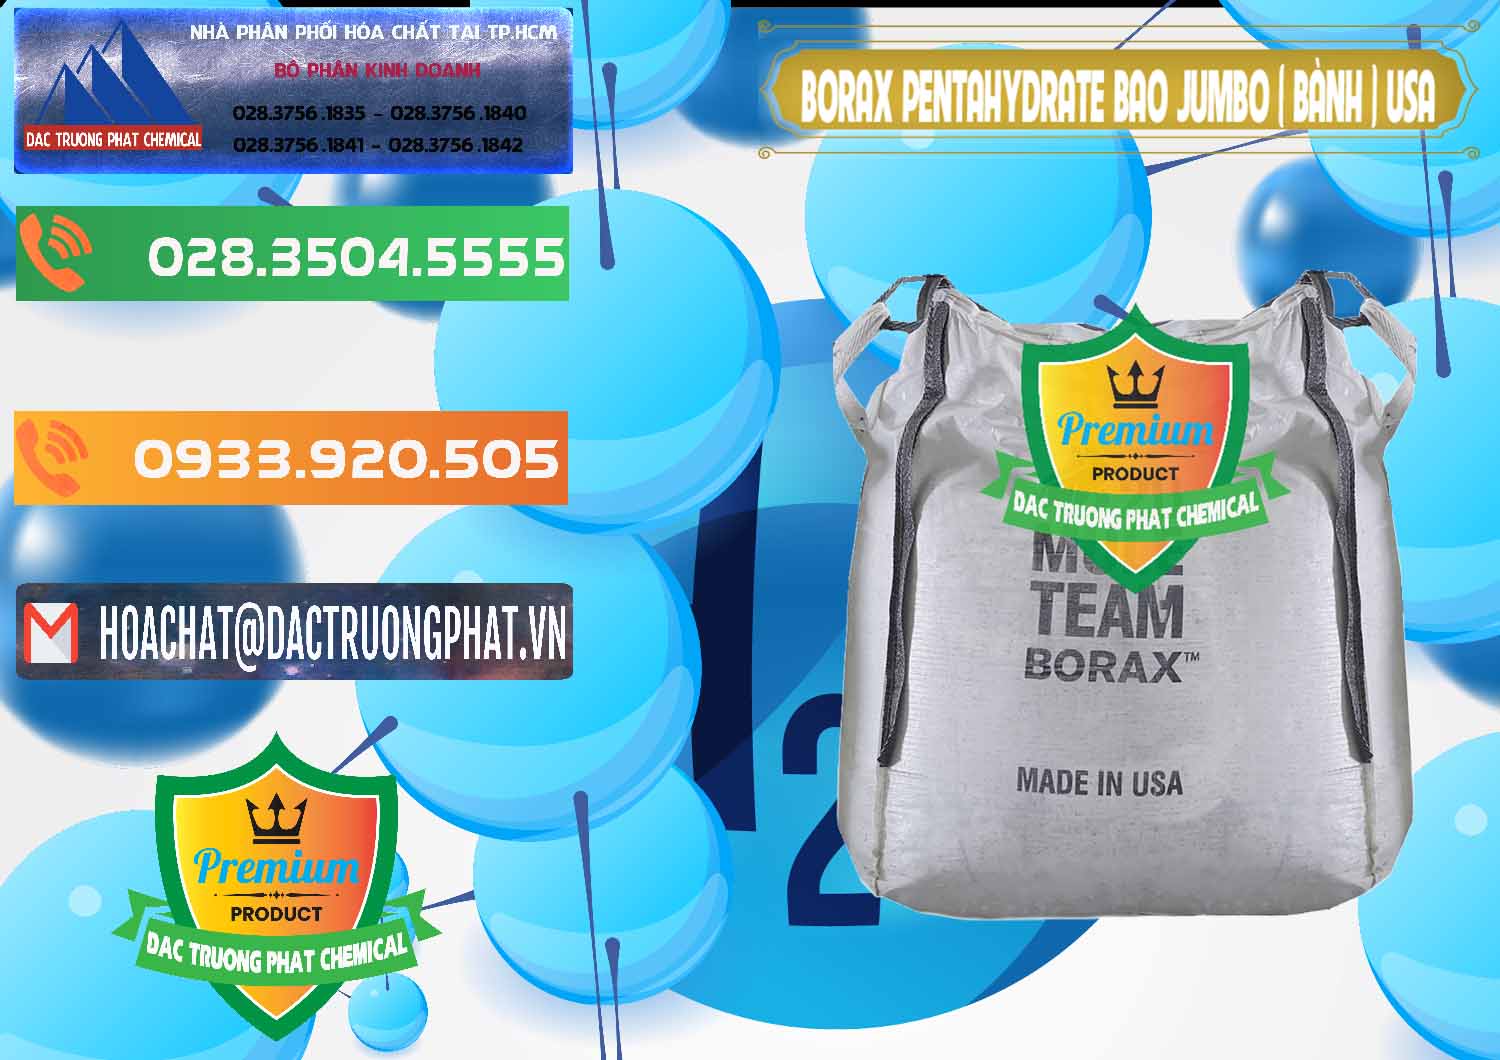 Công ty chuyên kinh doanh & bán Borax Pentahydrate Bao Jumbo ( Bành ) Mule 20 Team Mỹ Usa - 0278 - Nhà phân phối - cung cấp hóa chất tại TP.HCM - hoachatxulynuoc.com.vn